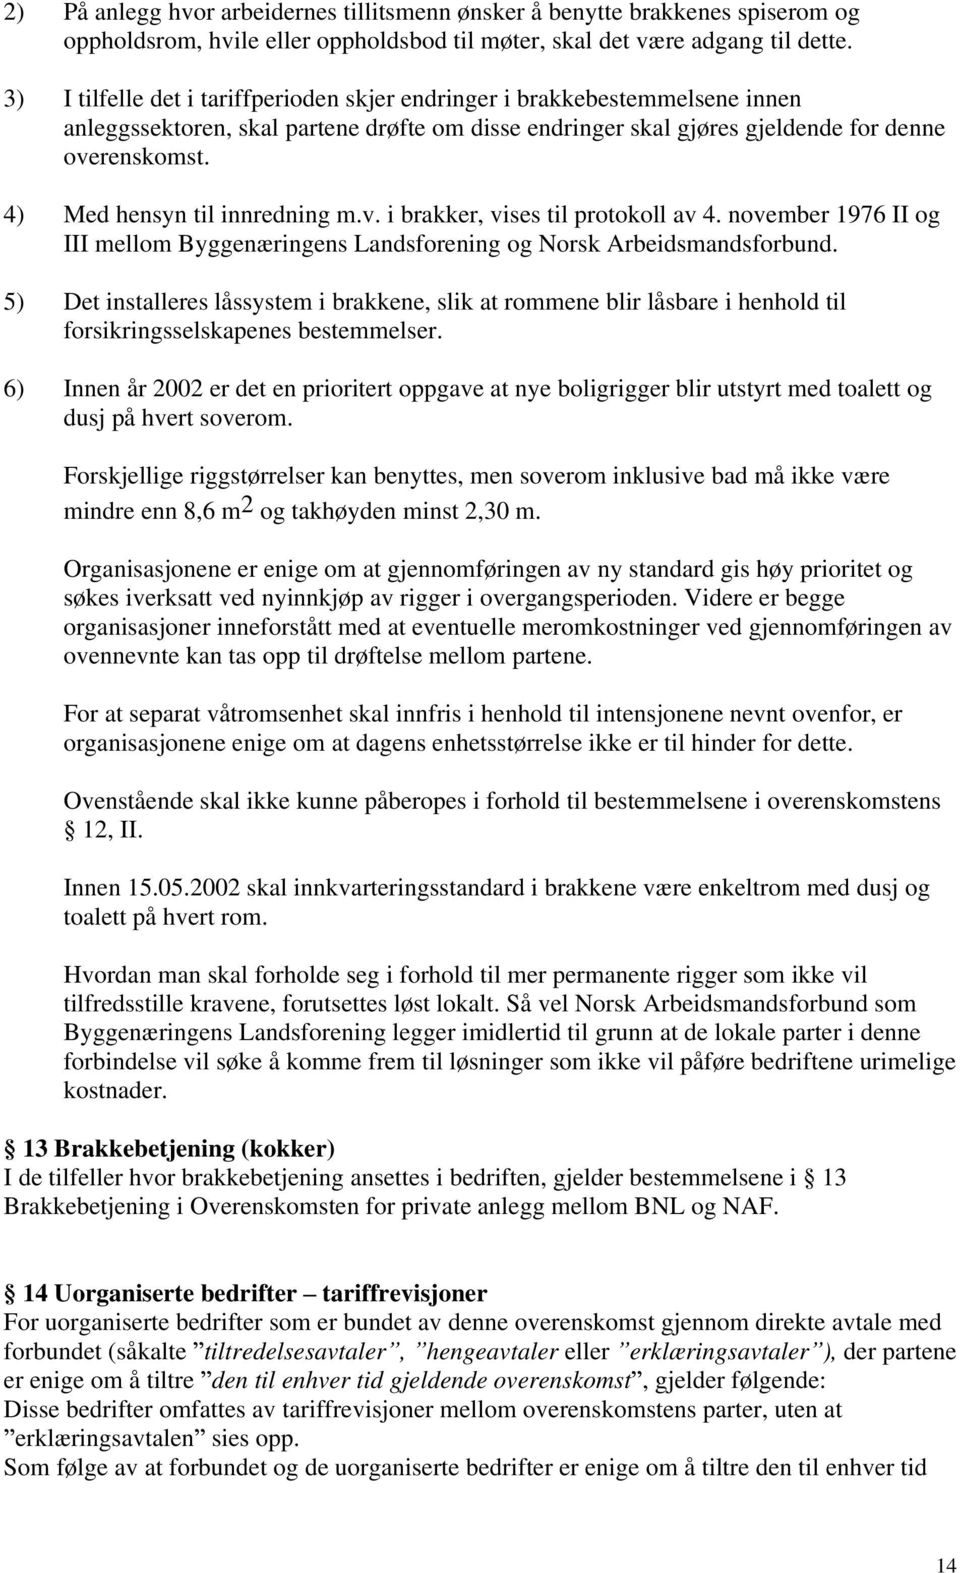 4) Med hensyn til innredning m.v. i brakker, vises til protokoll av 4. november 1976 II og III mellom Byggenæringens Landsforening og Norsk Arbeidsmandsforbund.